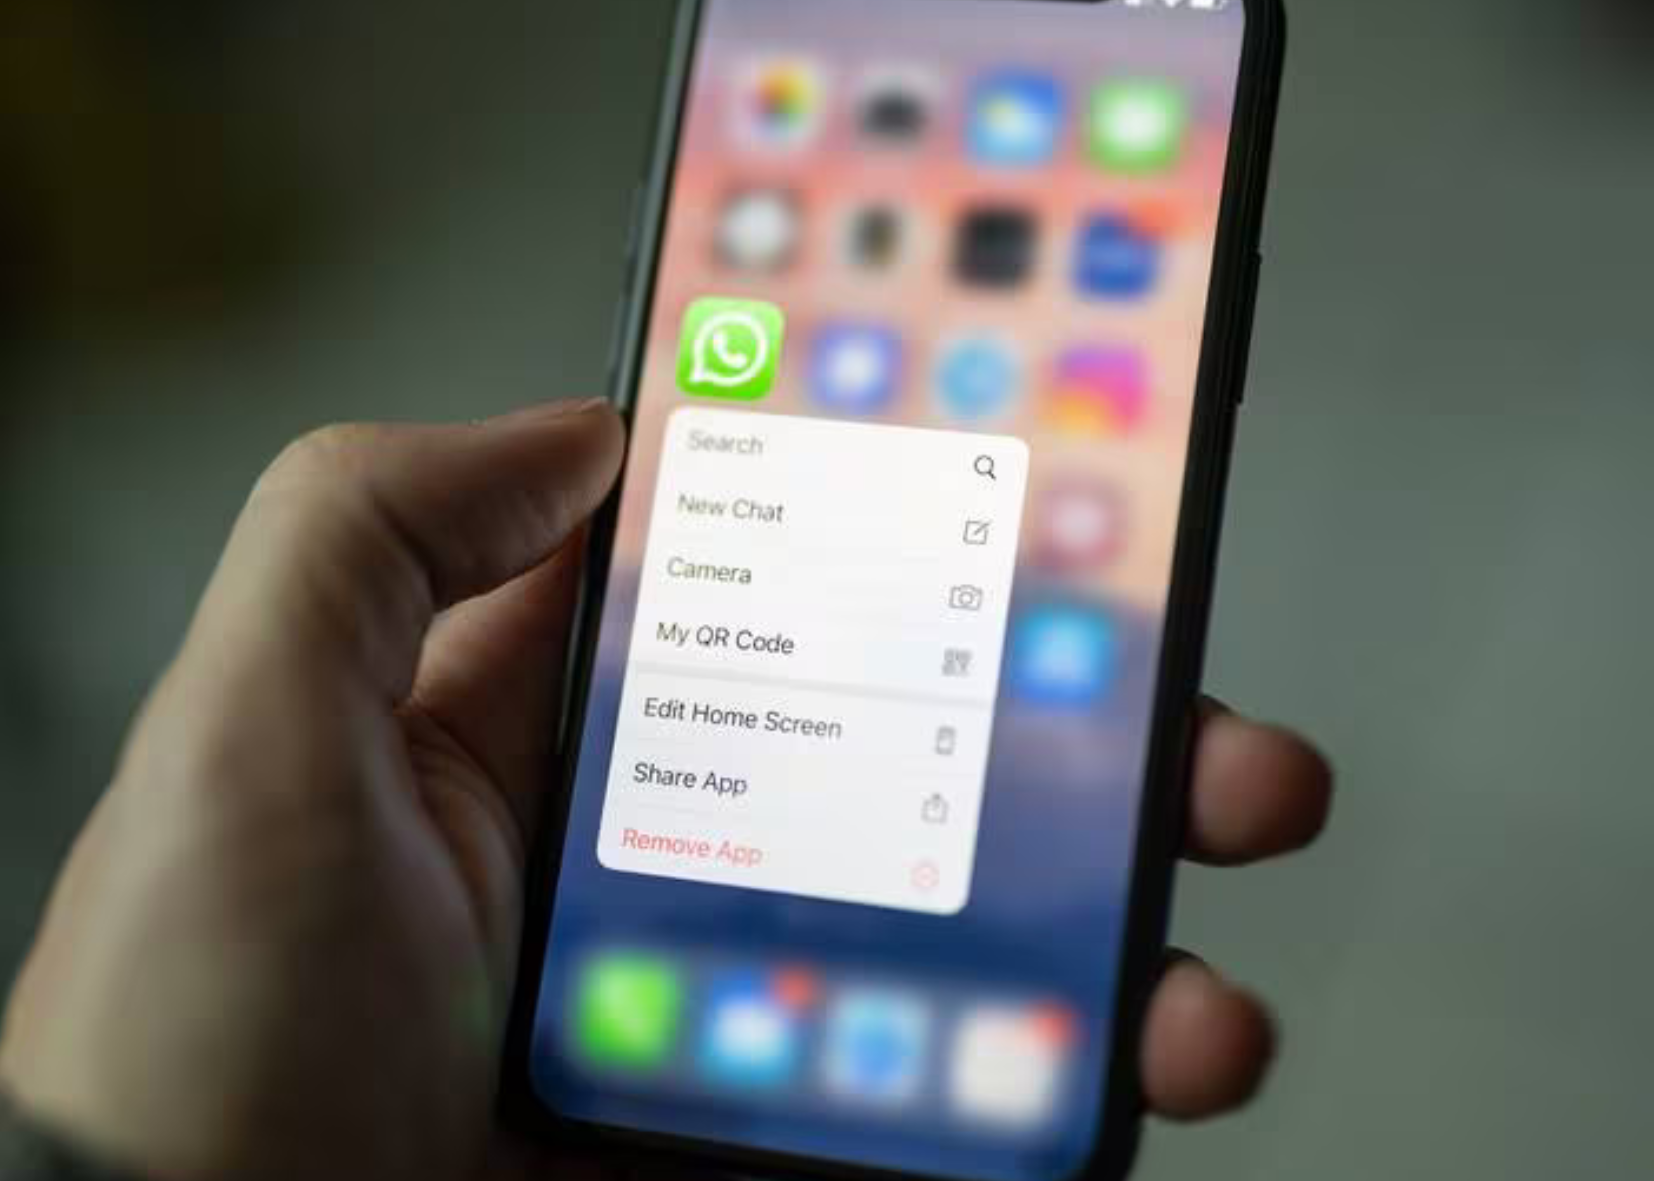  Adiós a la pérdida de calidad en iPhone: WhatsApp habilita envío de fotos y vídeos en HD